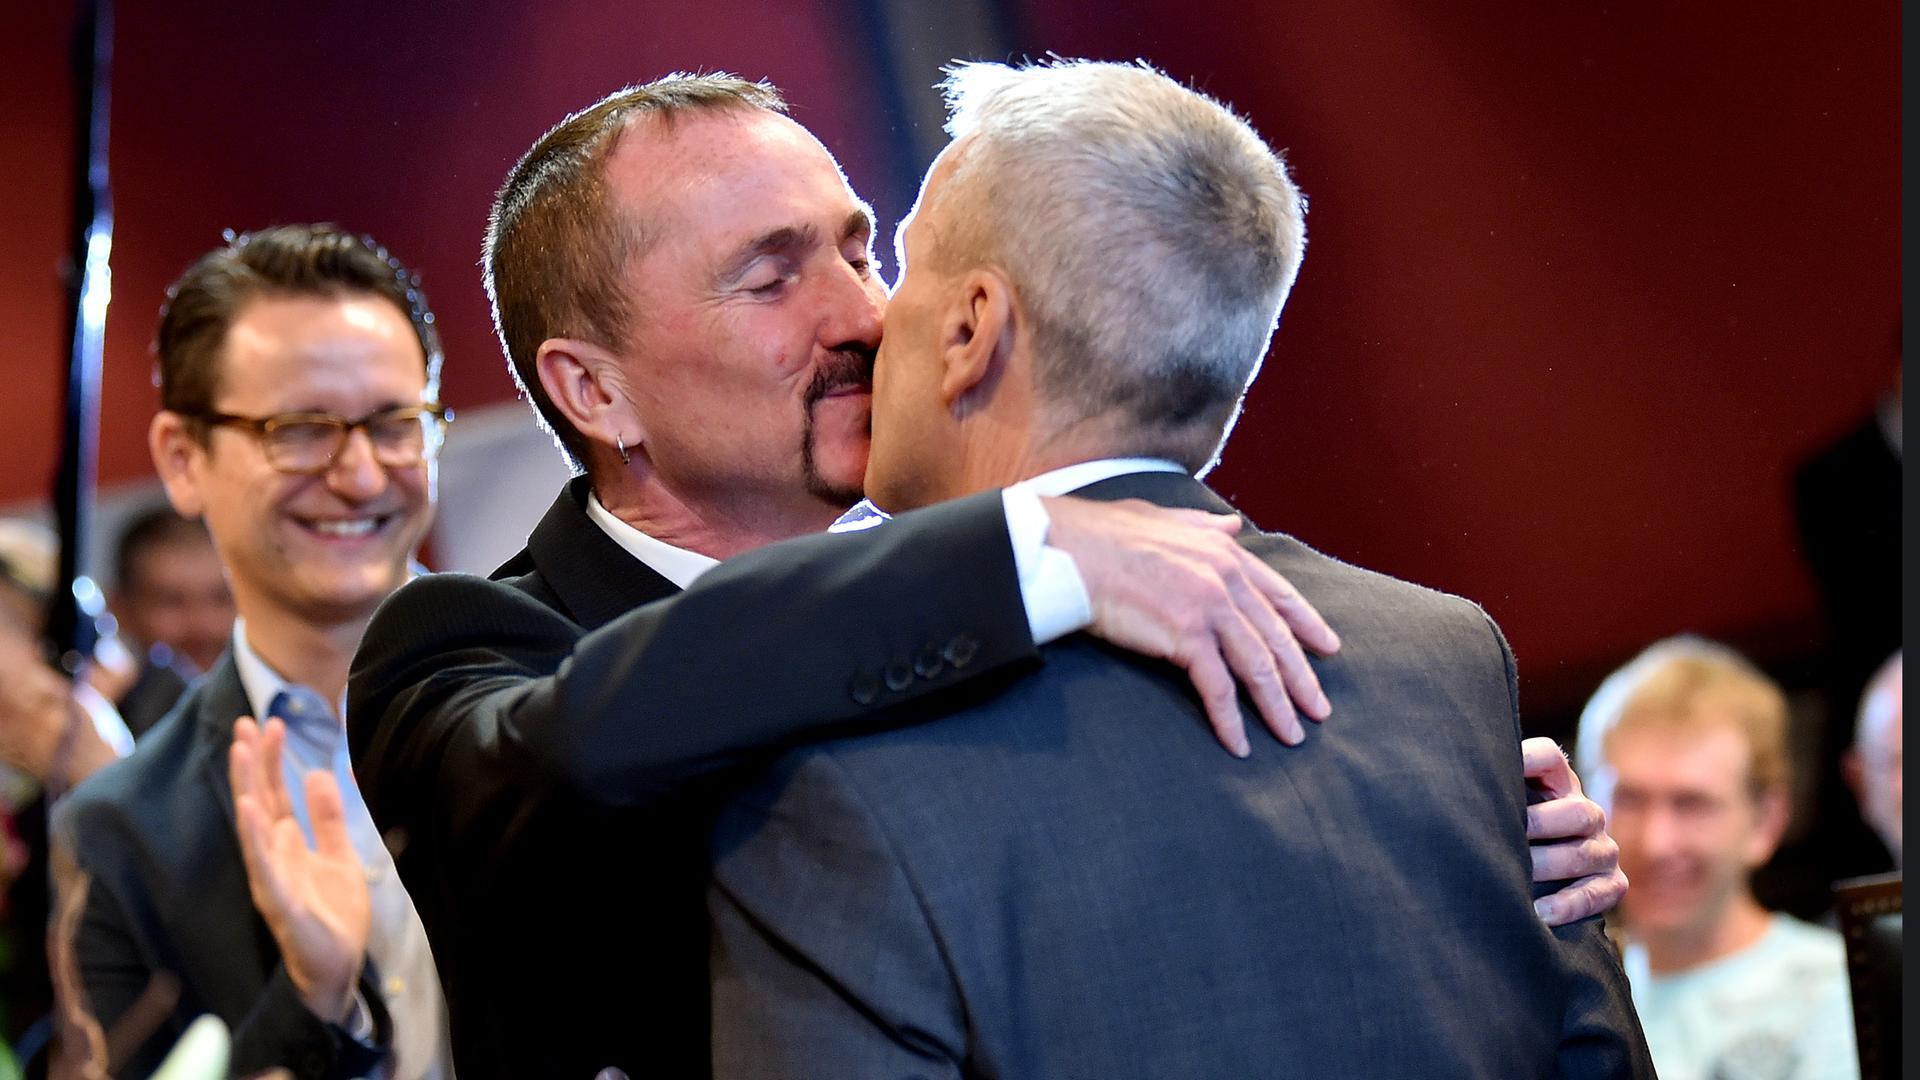 Karl Kreile (l) and Bodo Mende küssen sich nach ihrer Verpartnerung im Rathaus Schoeneberg  in Berlin